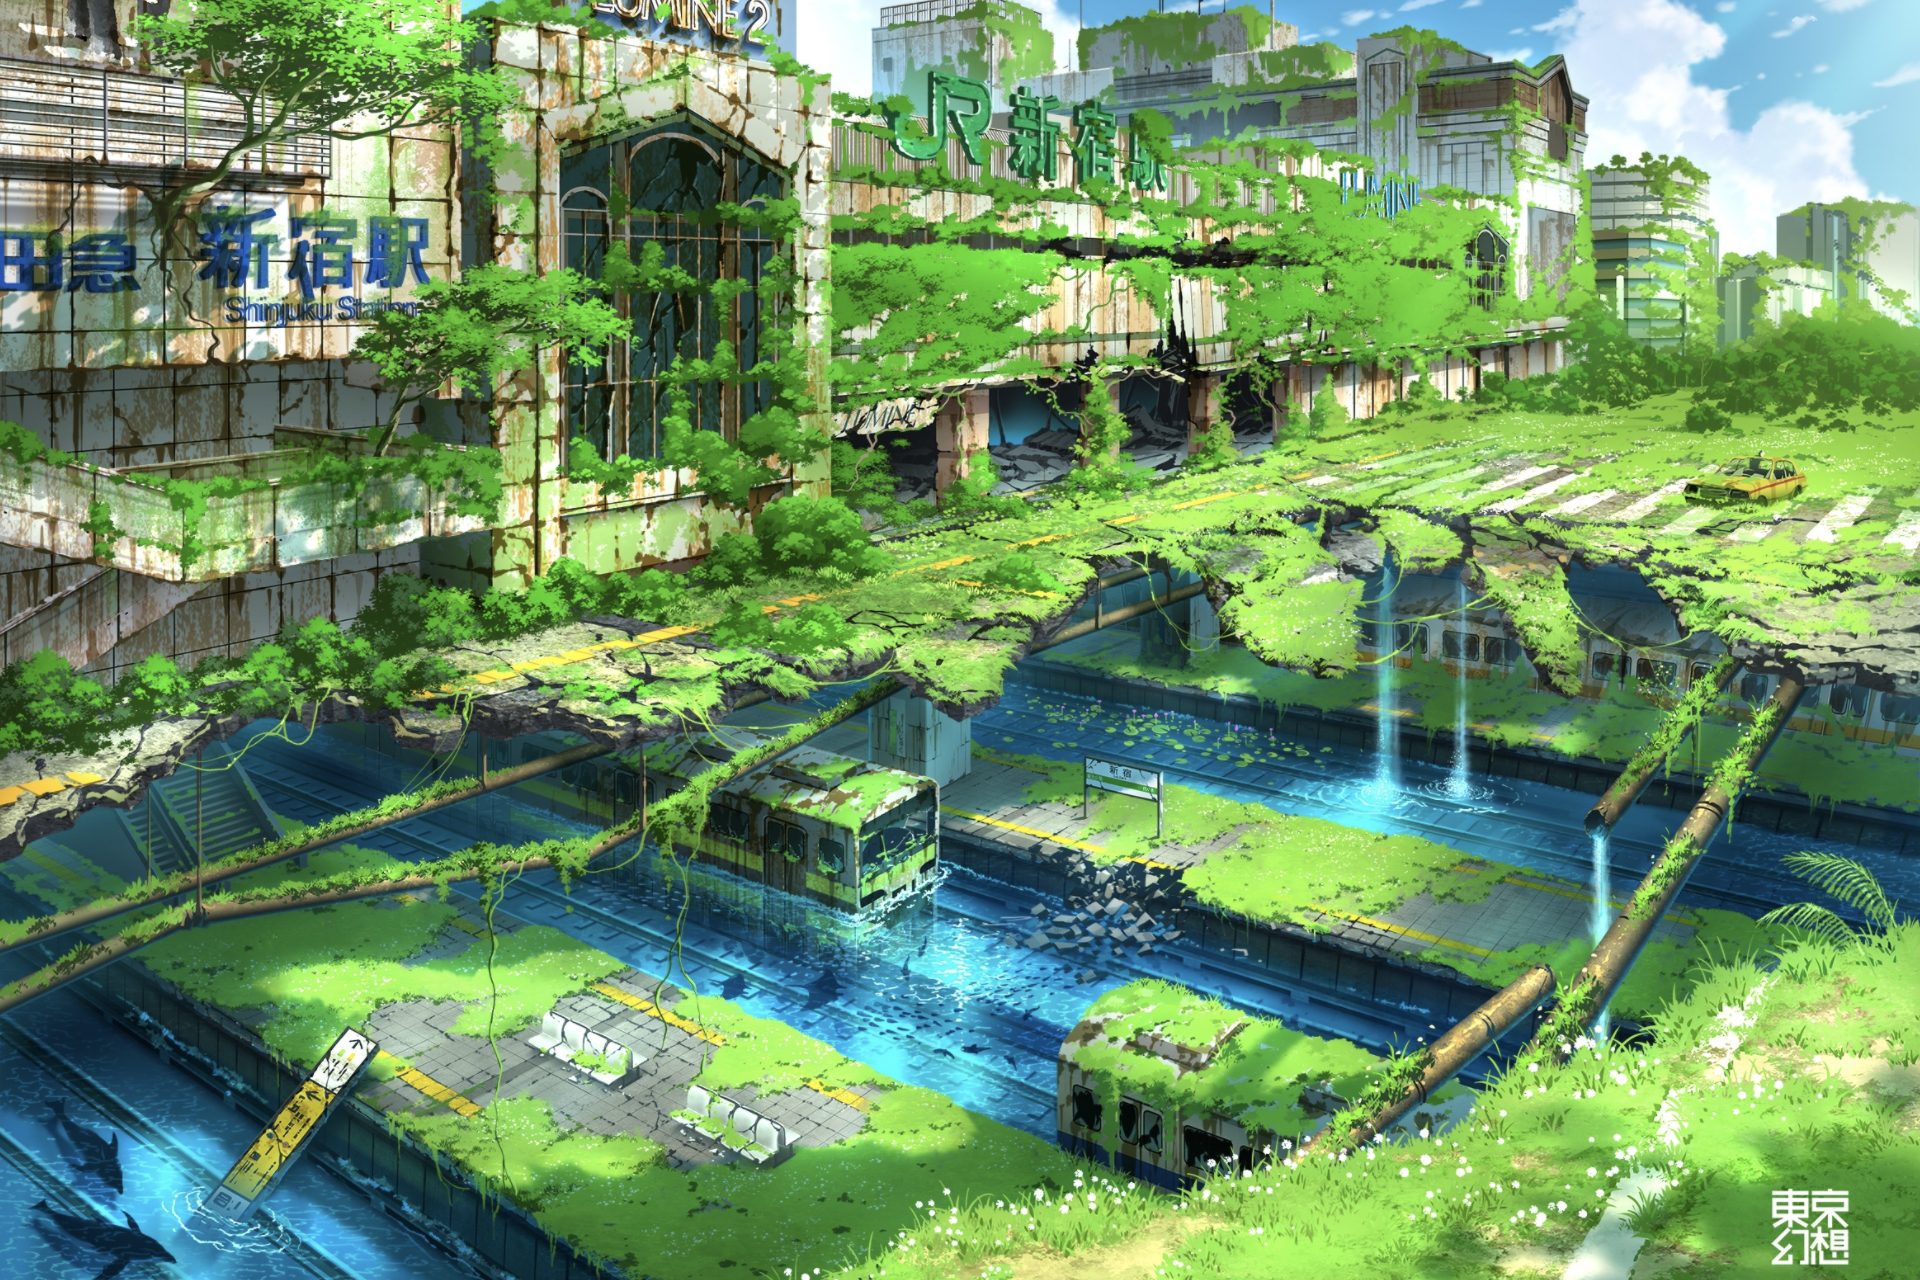 新宿や池袋が廃墟に 東京の未来図描いた 幻想イラスト がネットで話題 ツイナビ ツイッターの話題まとめ